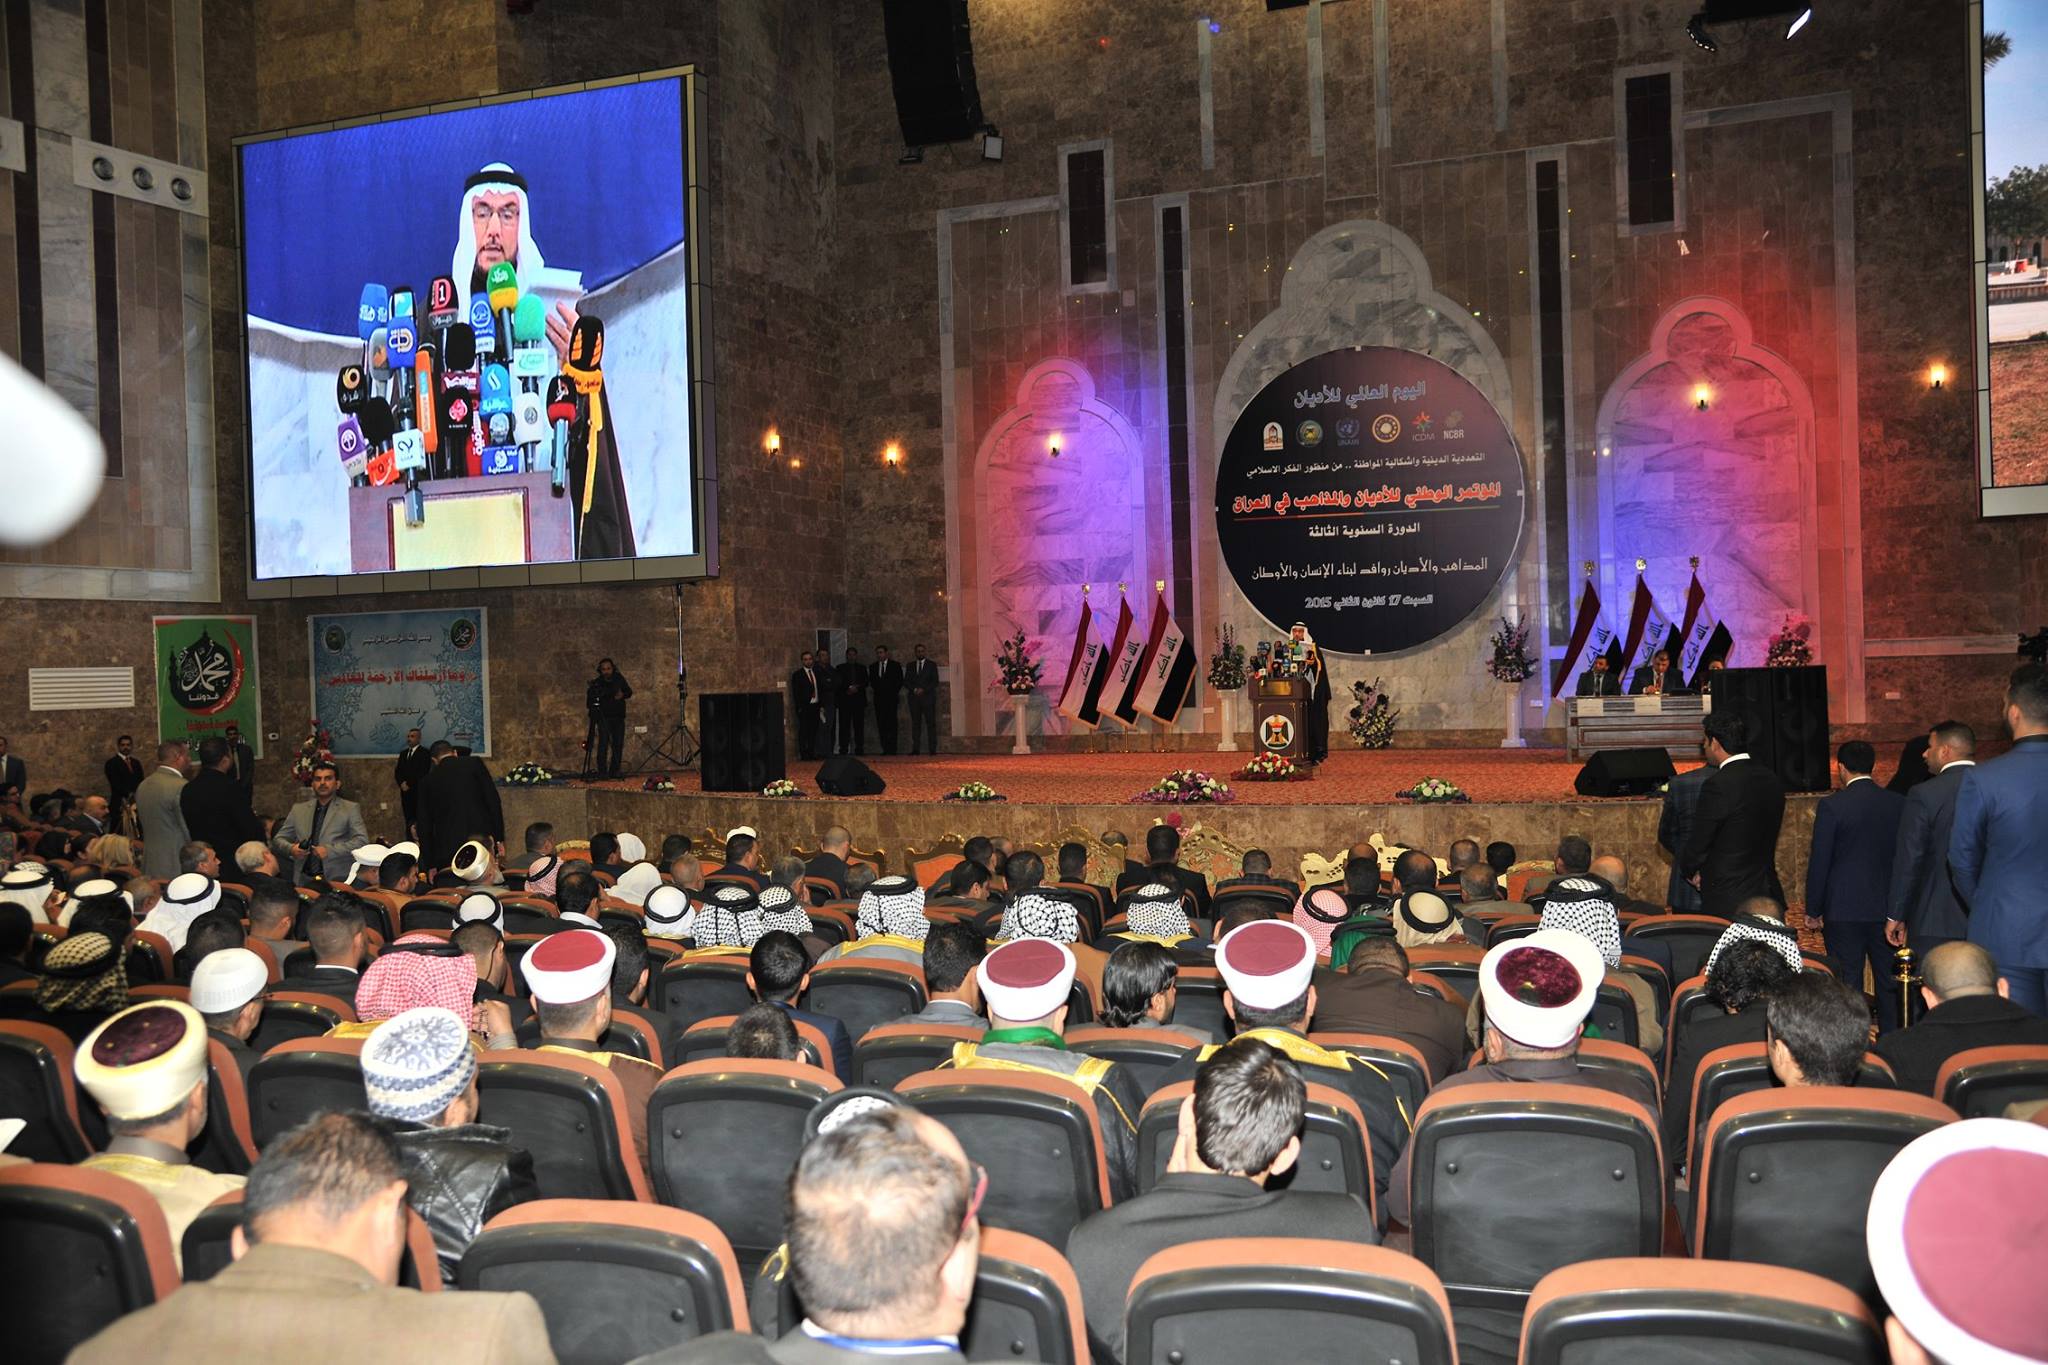 ديوان الوقف السني يحتضن المؤتمر الوطني للاديان والمذاهب في العراق بنسخته الثالثة (5)